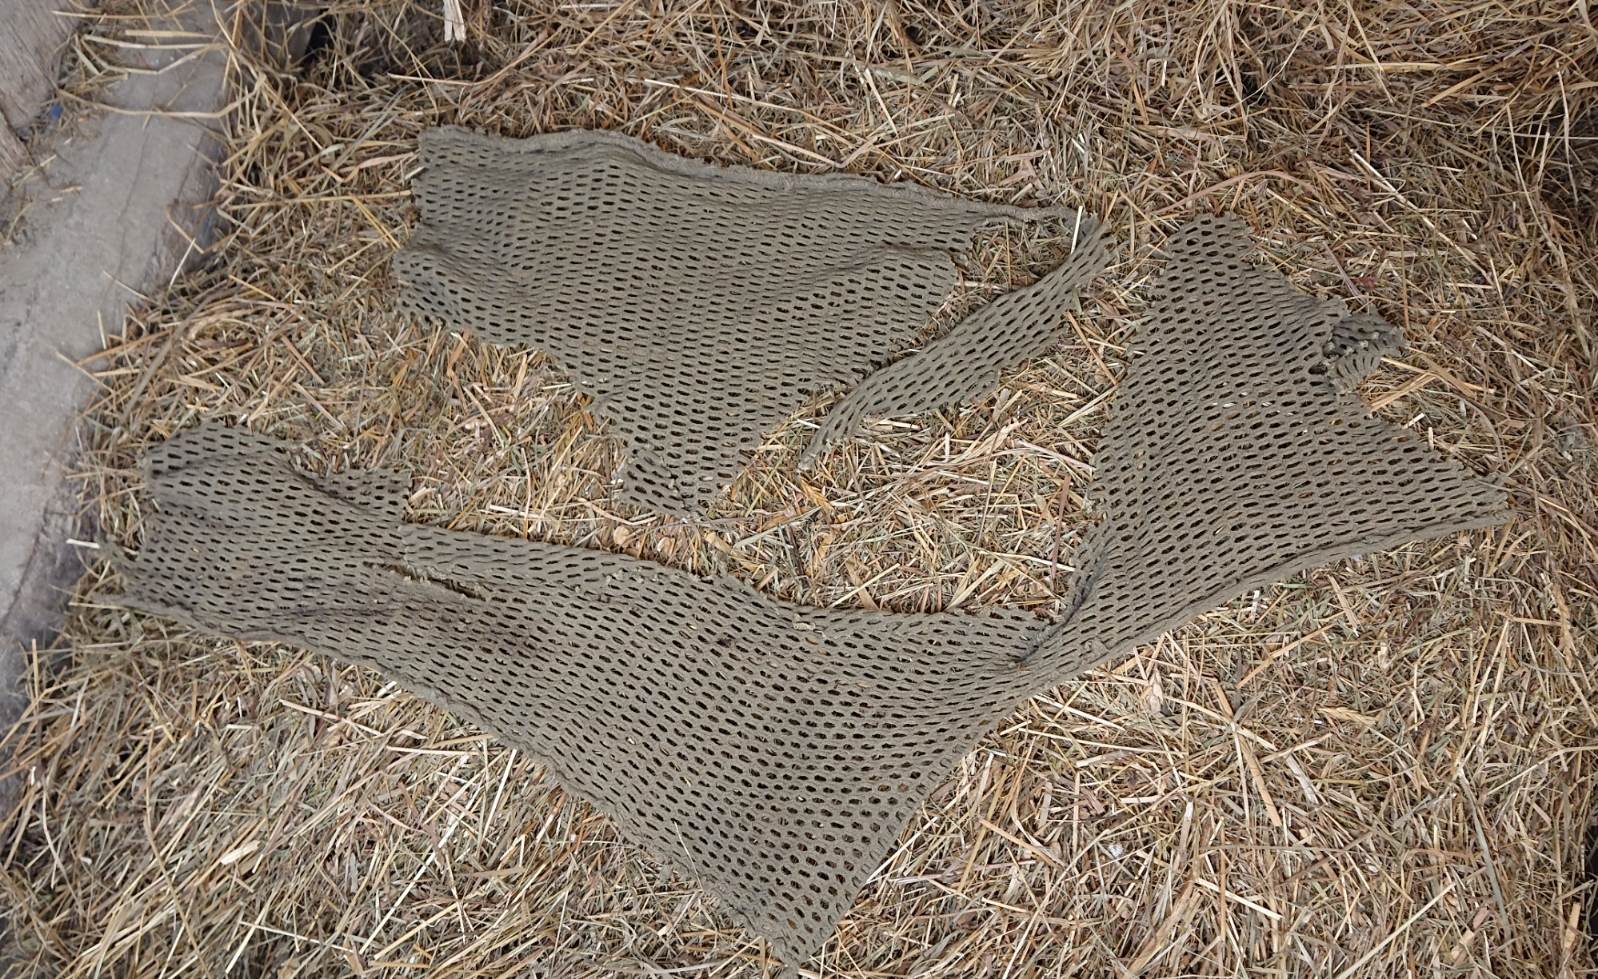 HdS Militaria Morceaux filet camouflage crevette / US ww2amouflage Net Pieces